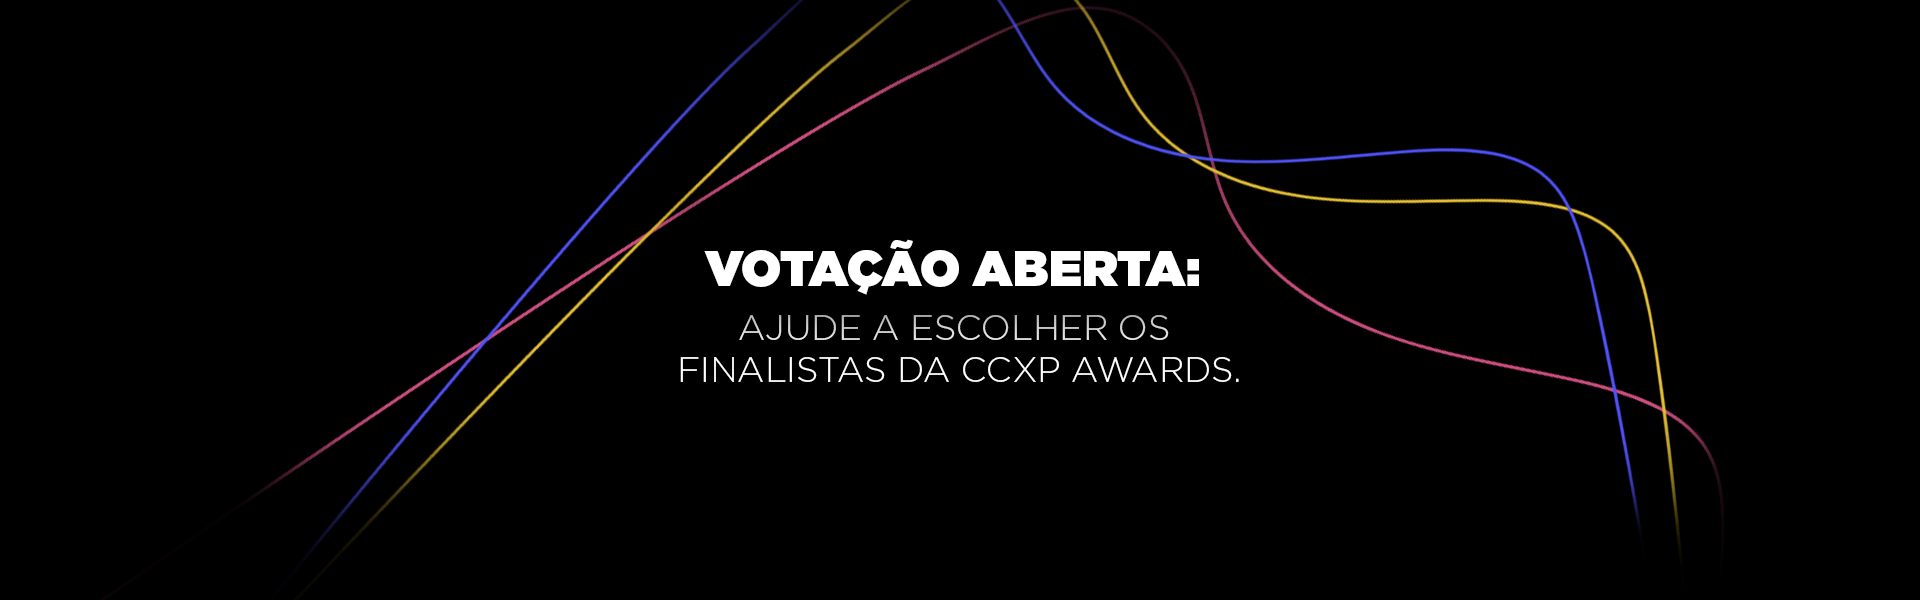 Votação aberta: Ajude a escolher os finalistas da CCXP Awards.